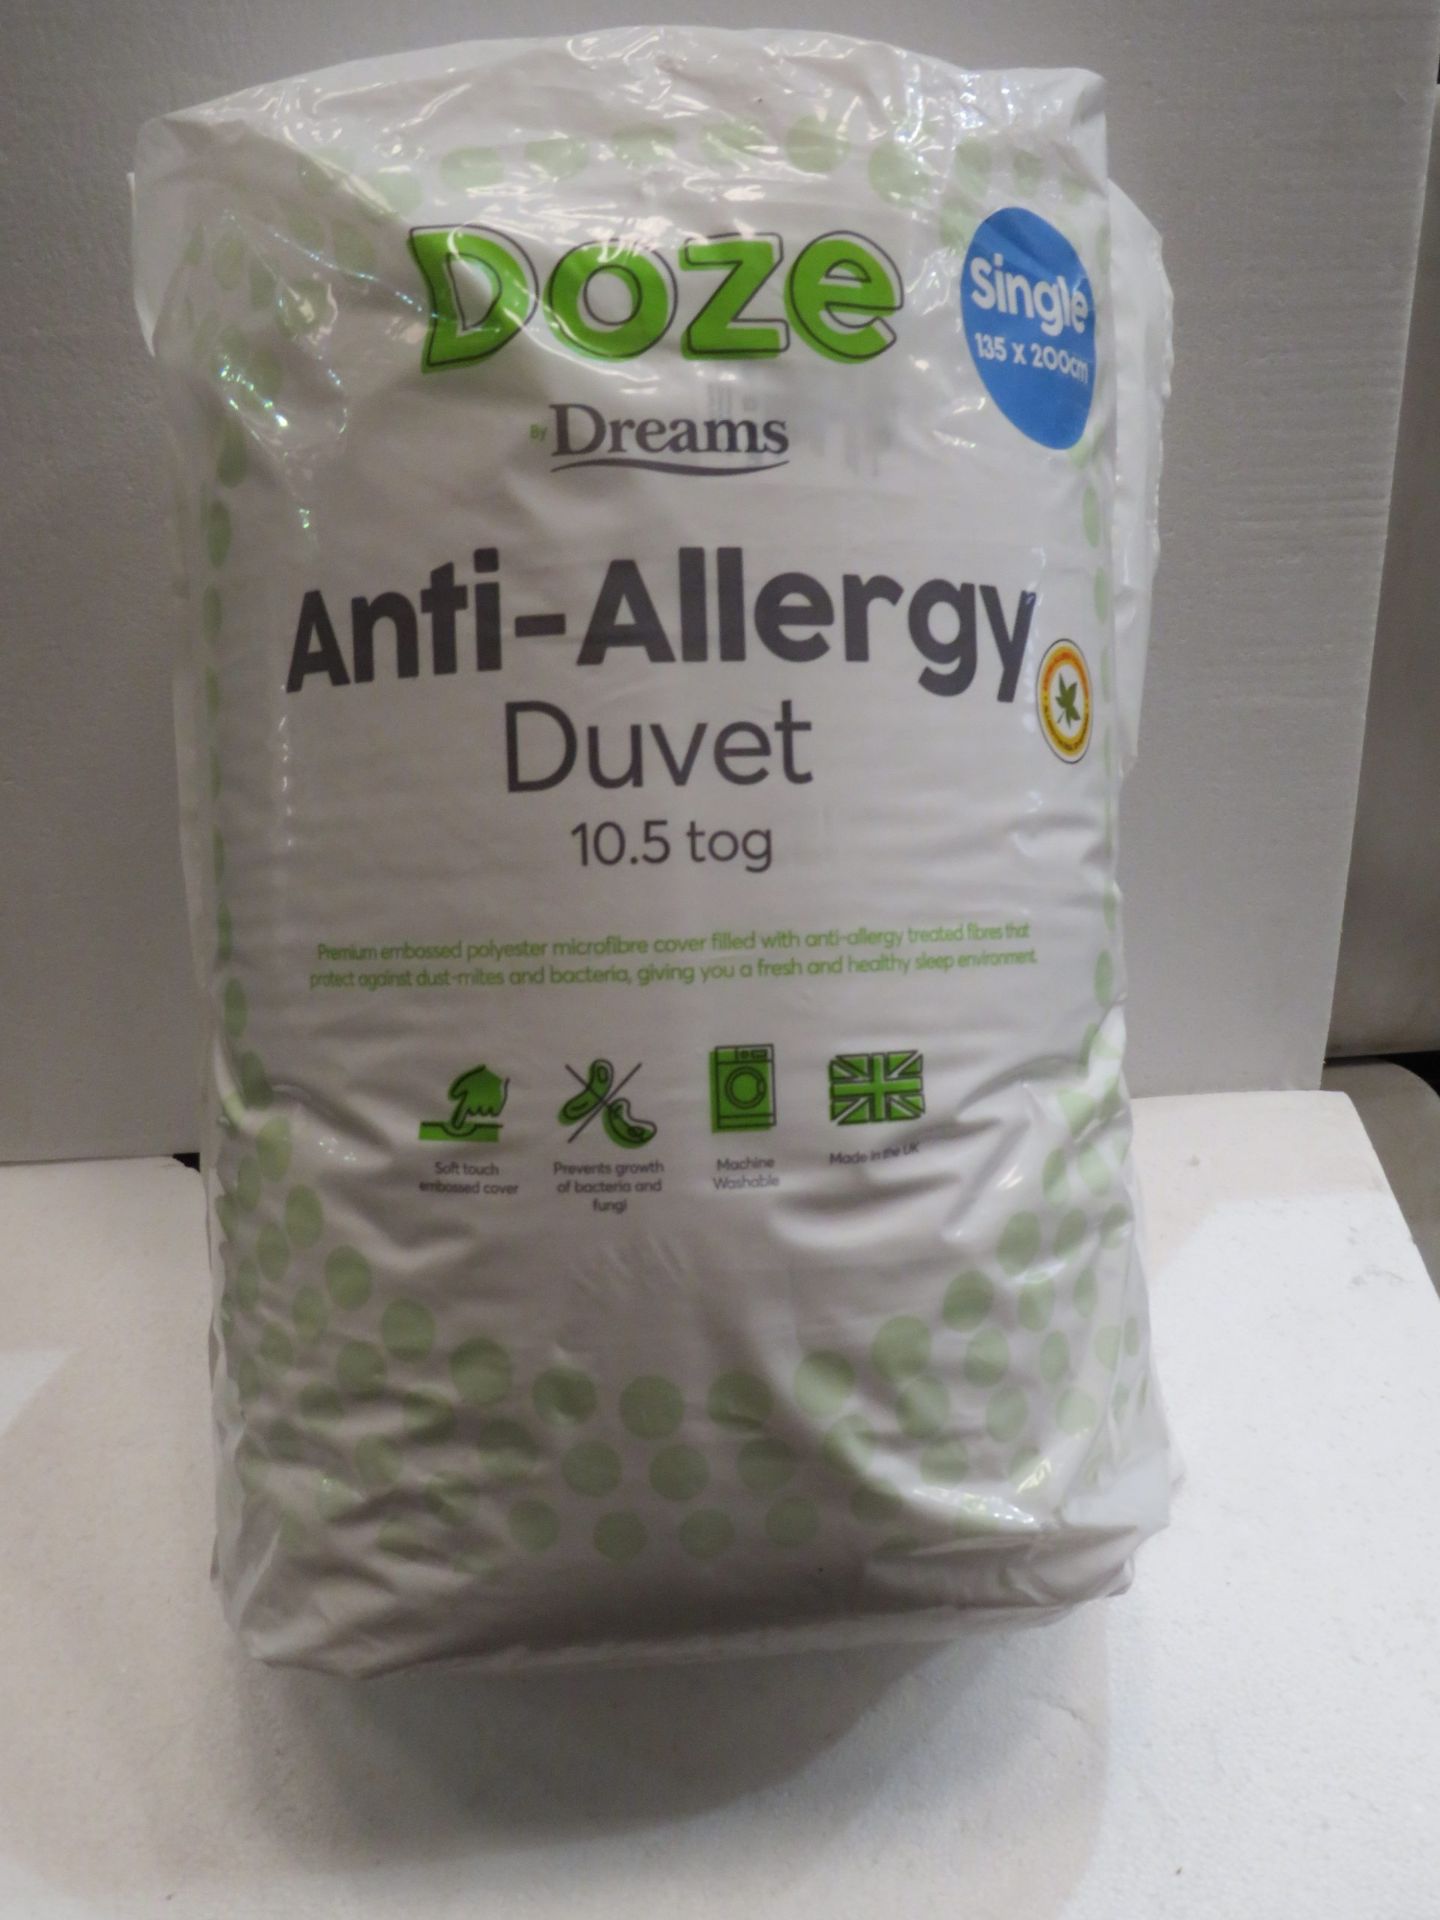 Doze anti-allergy duvet 10.5 Tog single